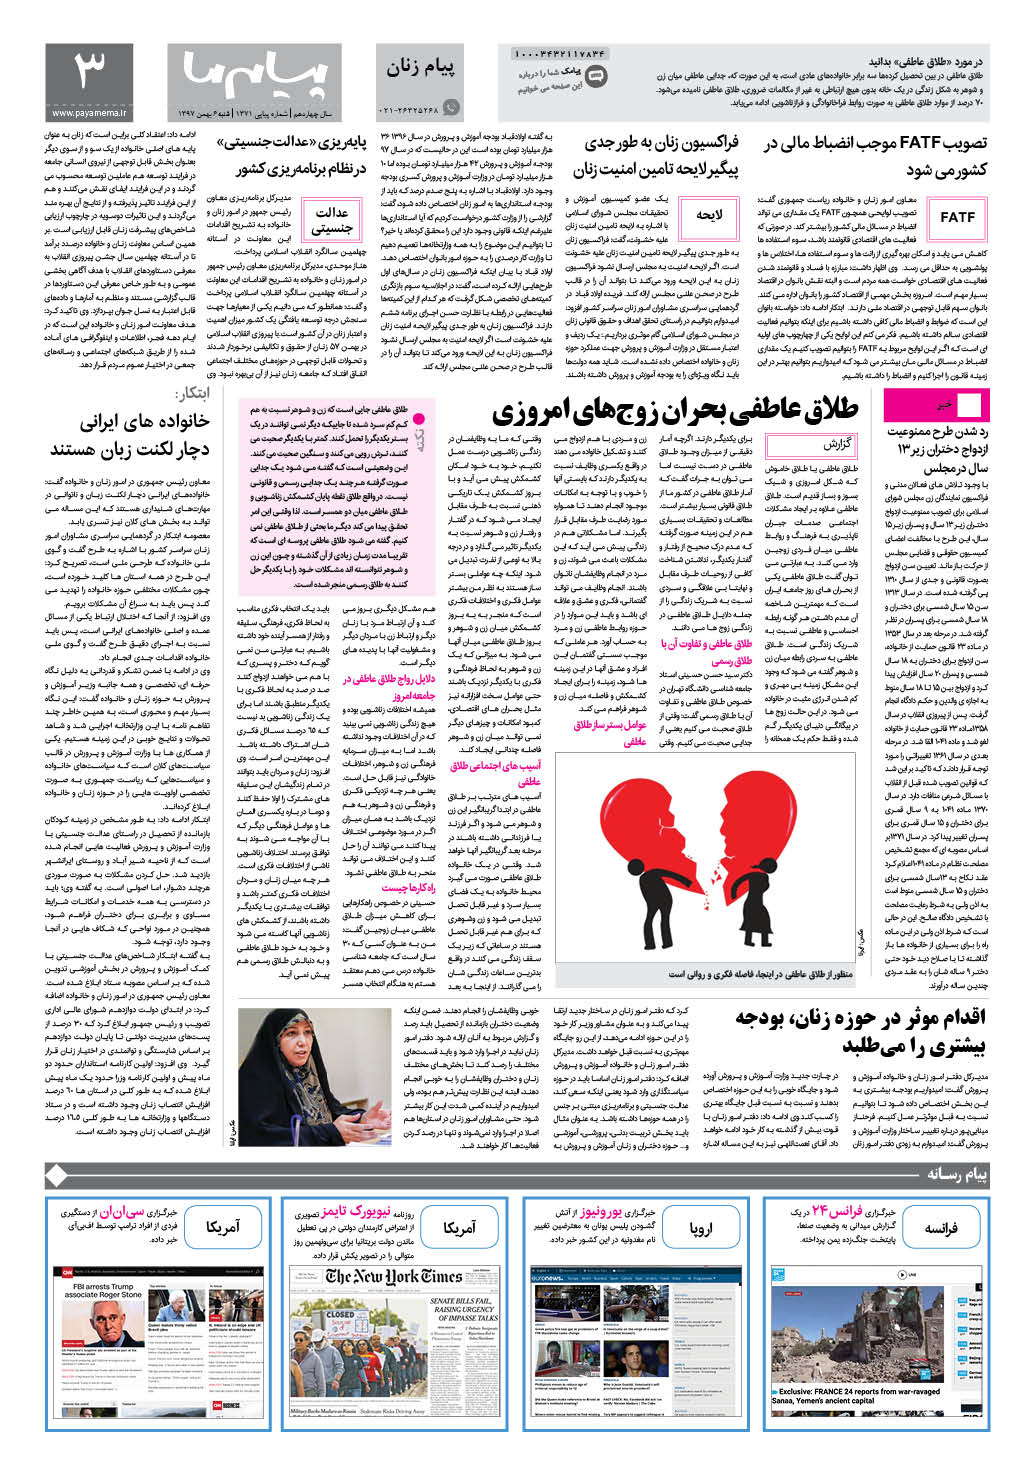 صفحه پیام زنان شماره 1371 روزنامه پیام ما